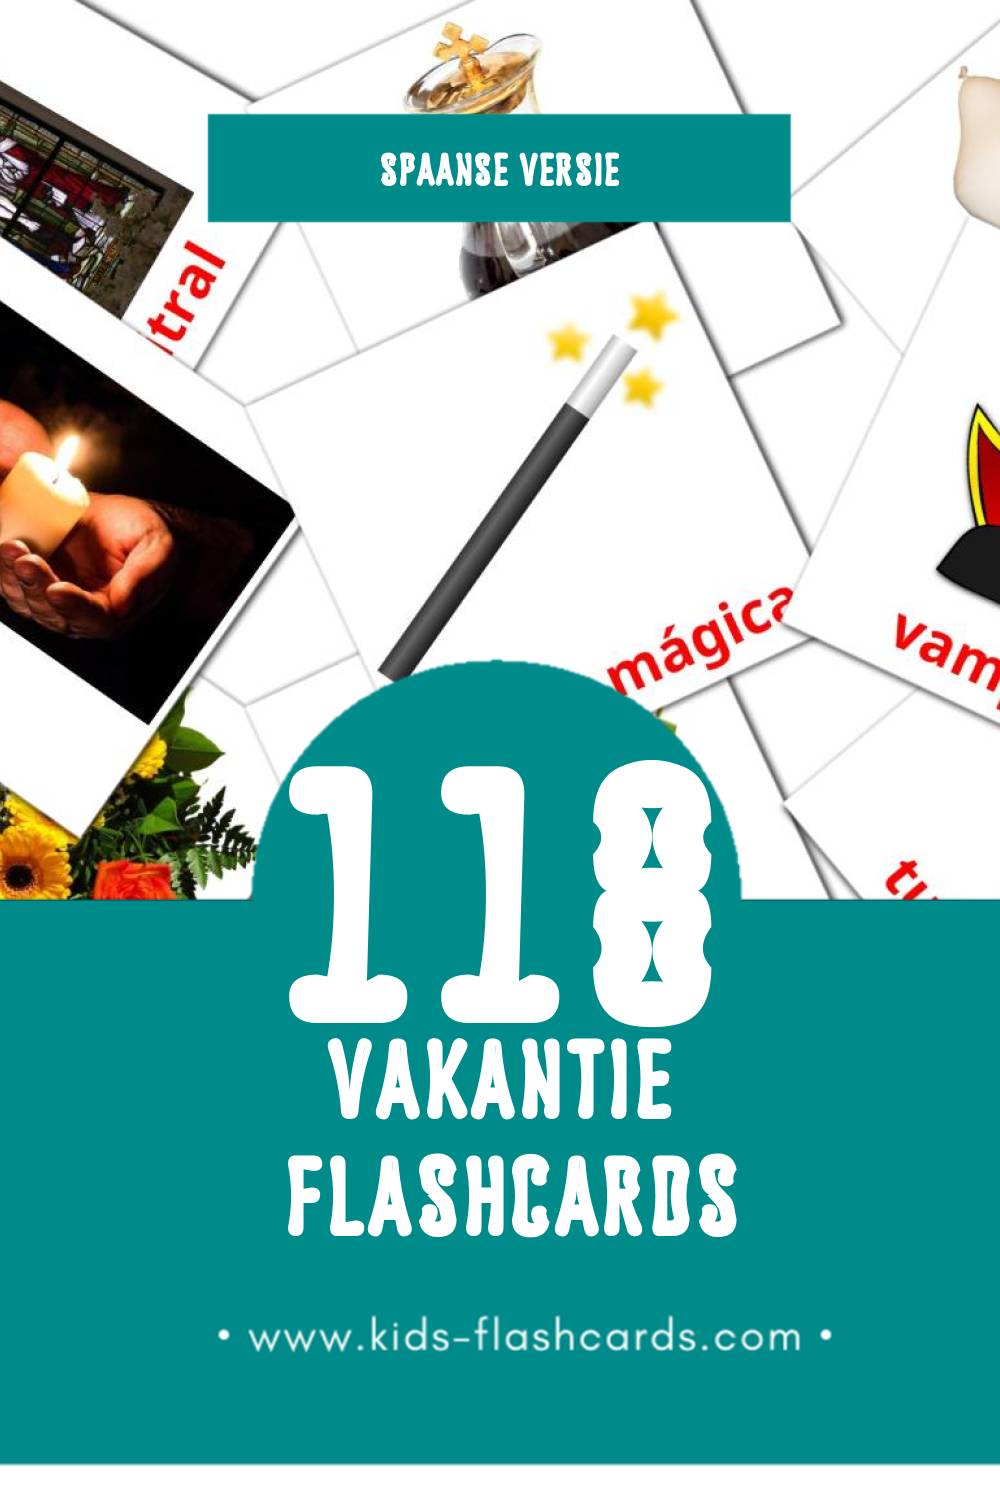 Visuele Vacaciones Flashcards voor Kleuters (118 kaarten in het Spaans)